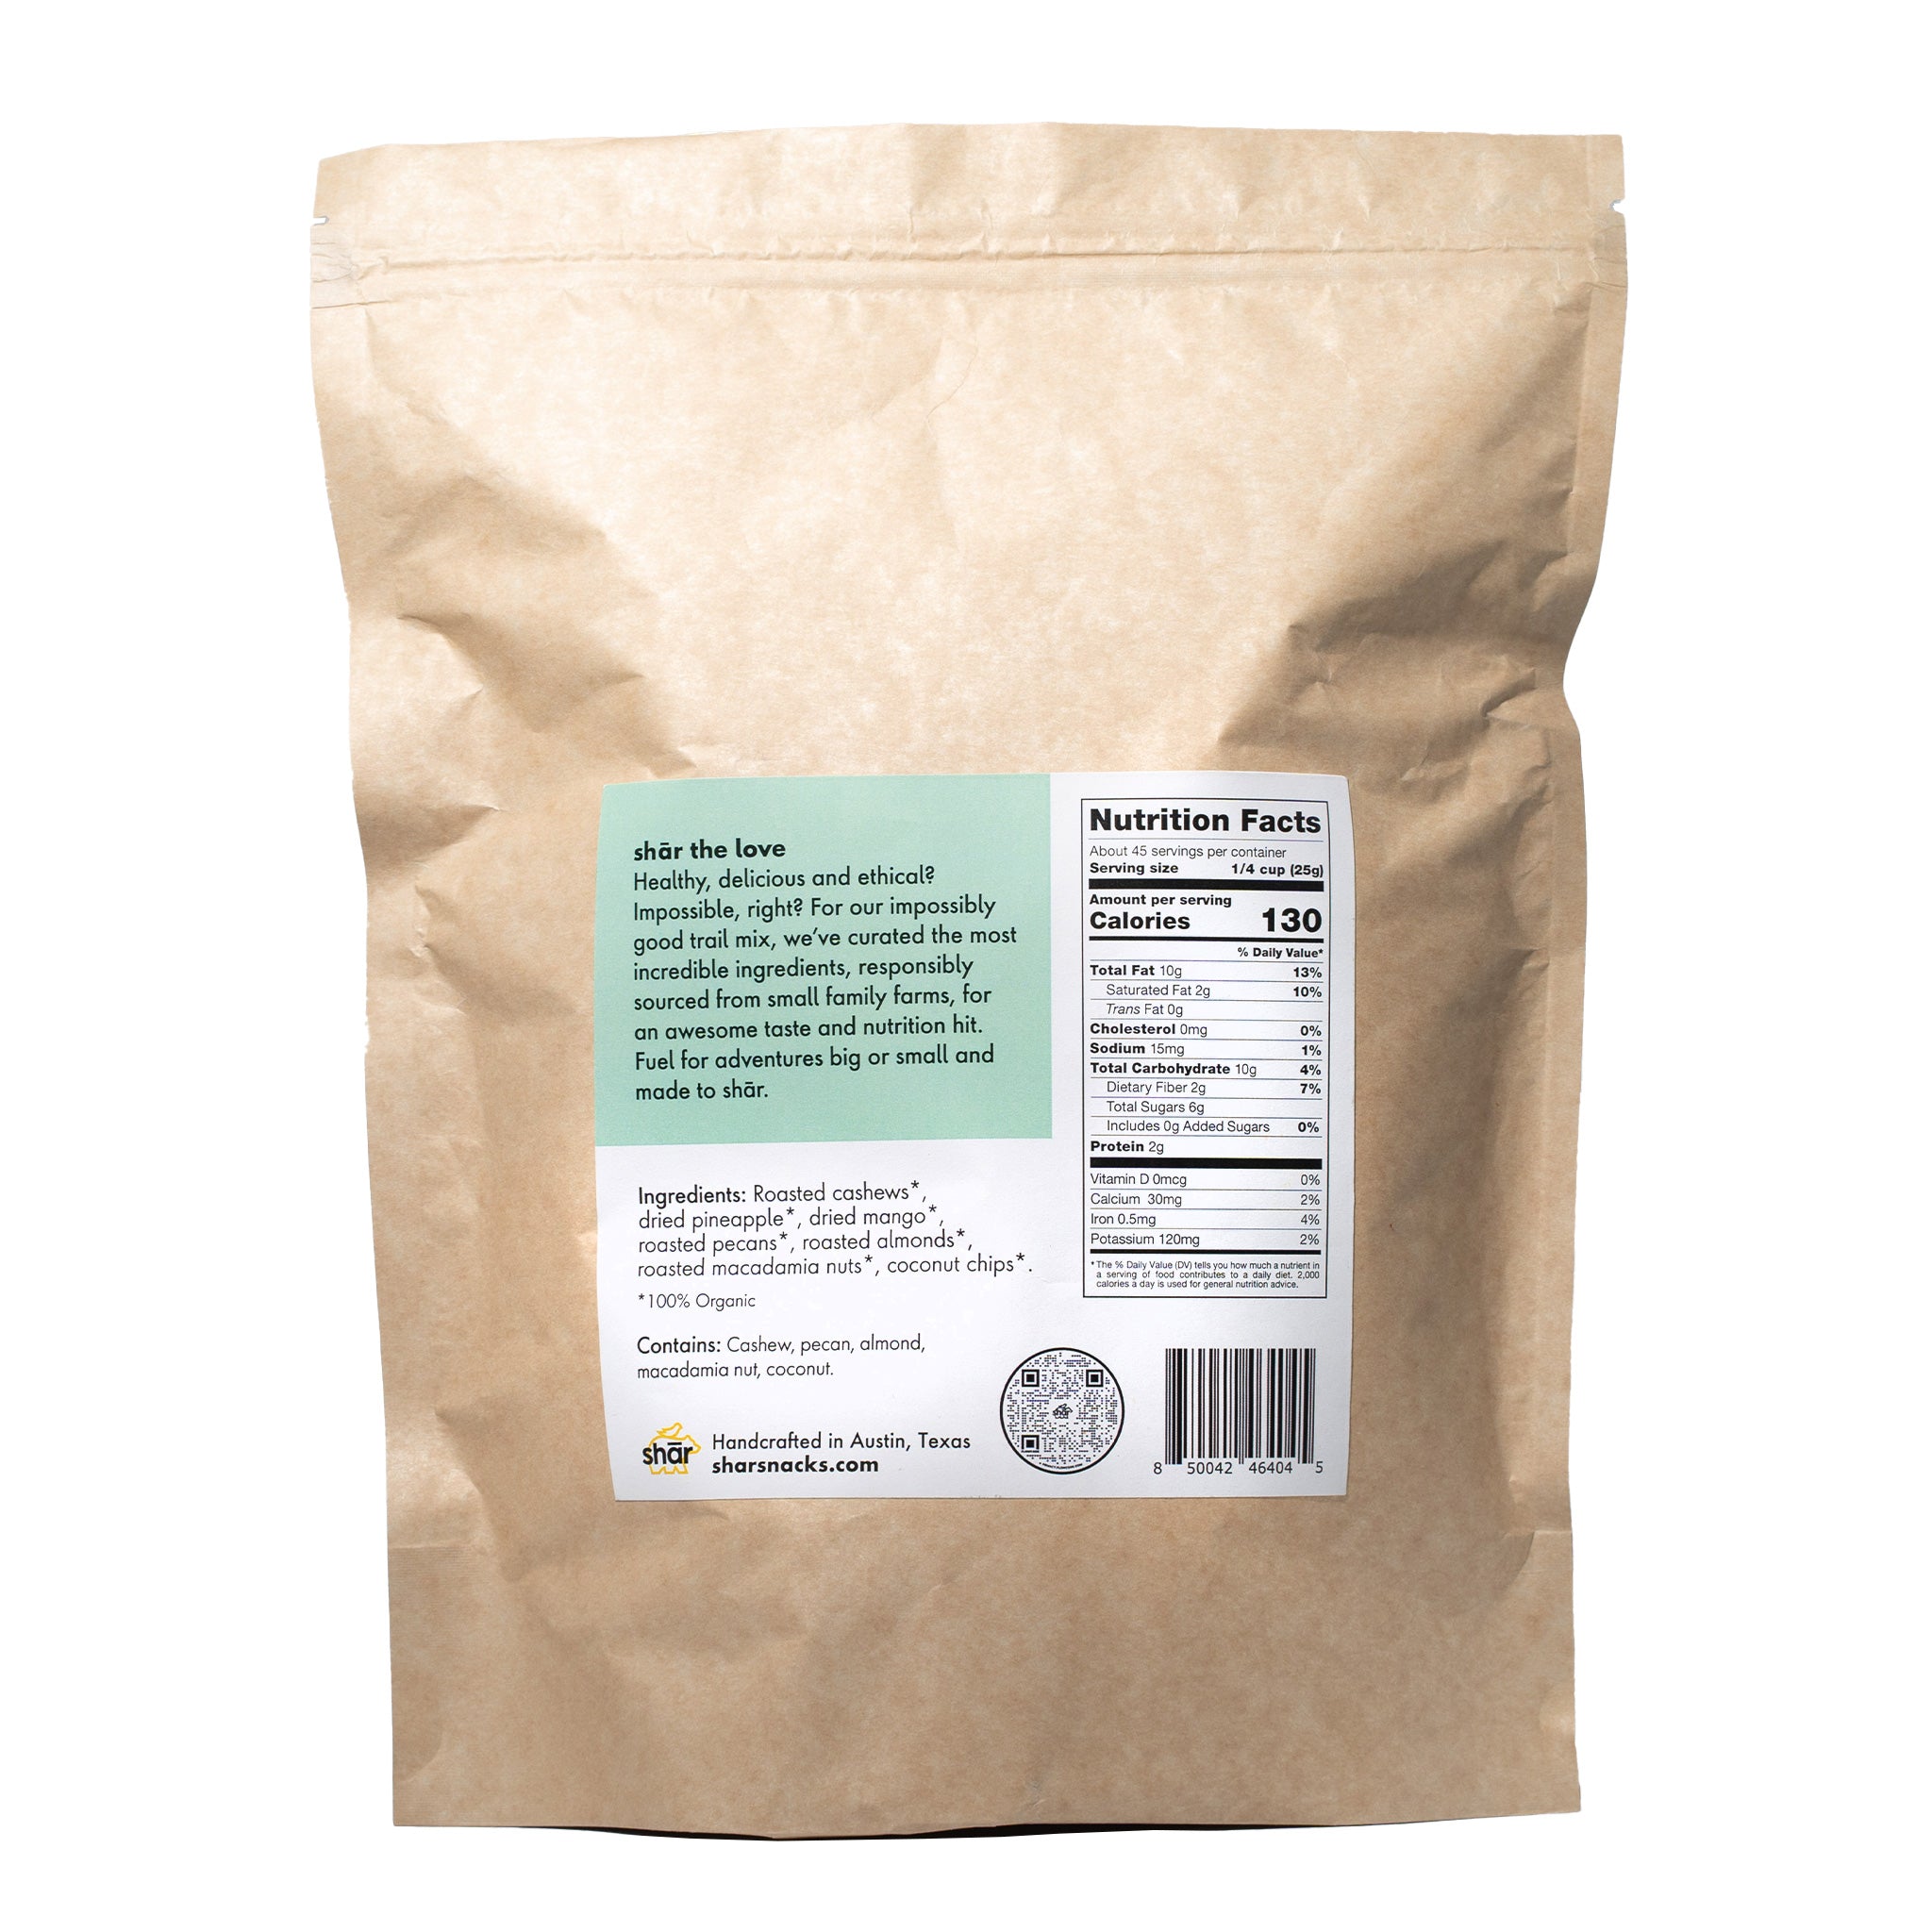 2.5 lb plant-based shār bag – Tropical trail mix